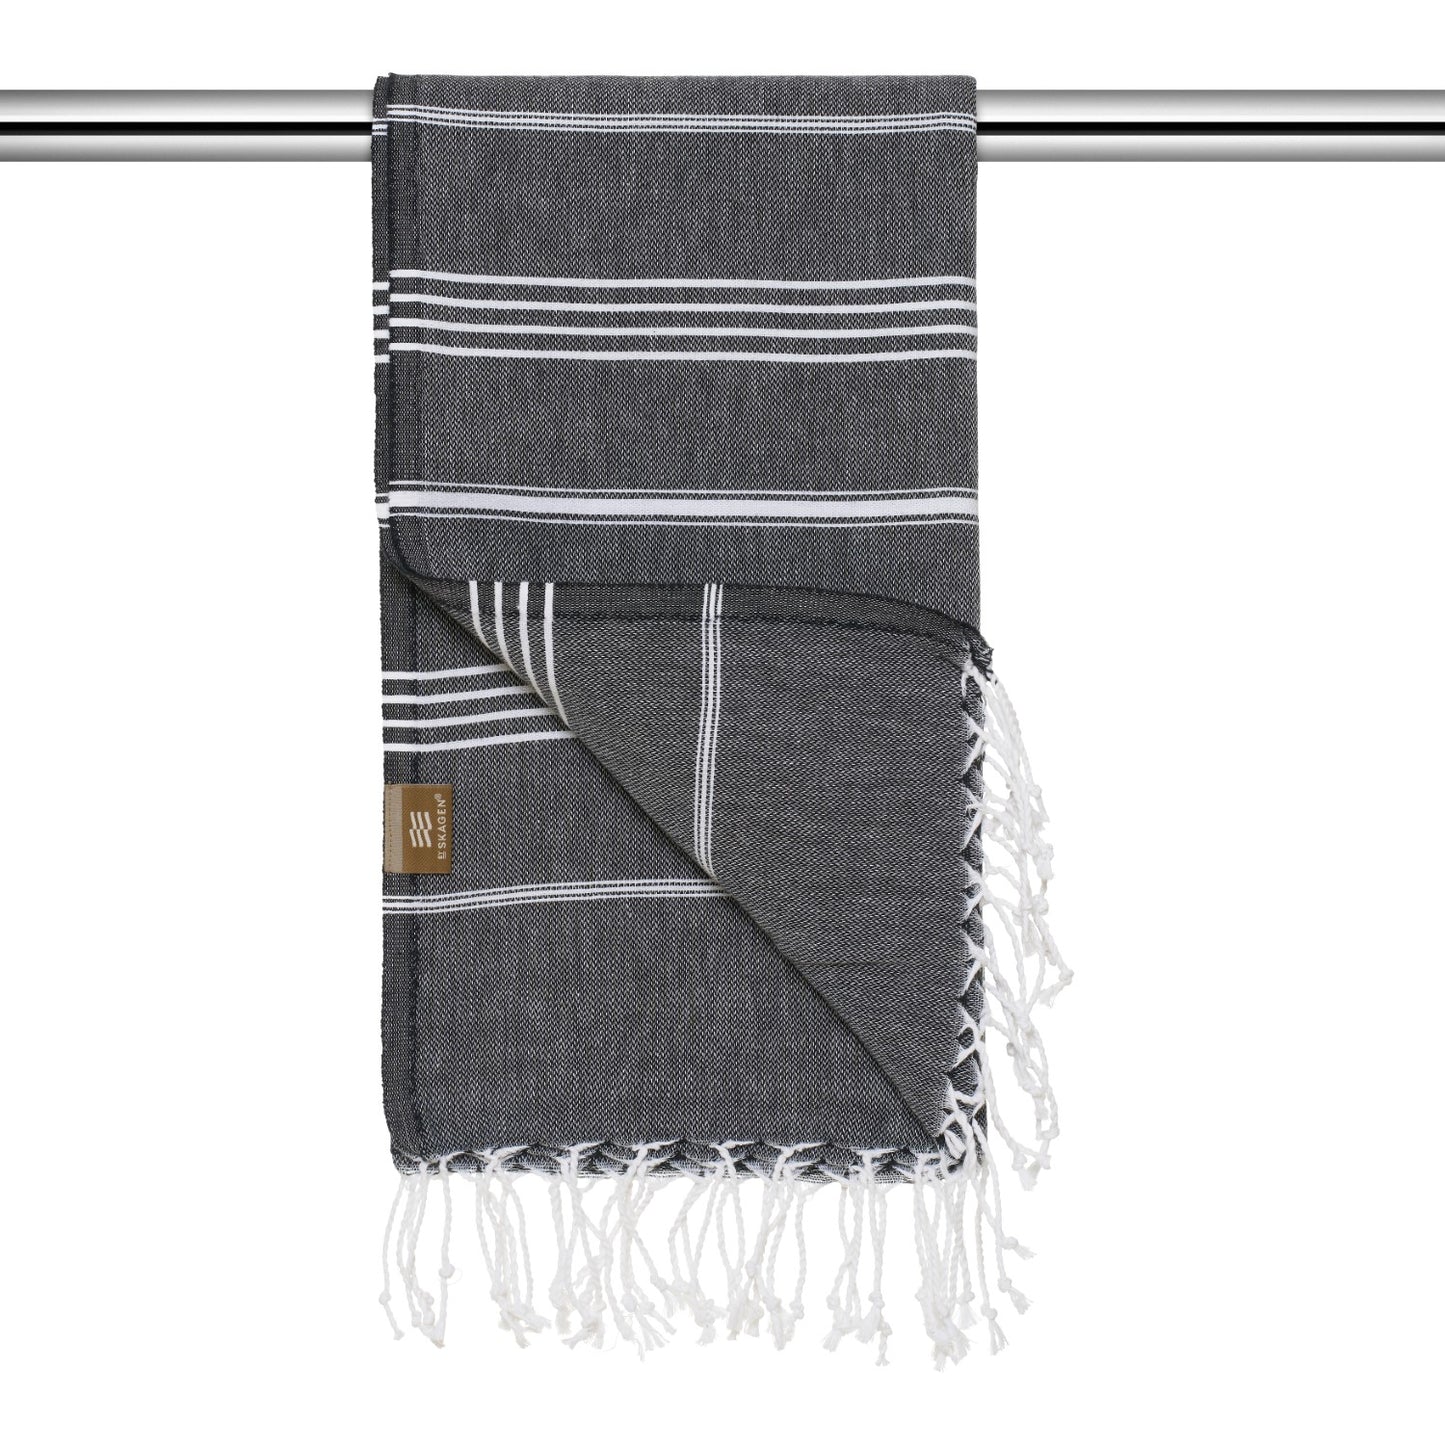 By Skagen - Hammam håndklæde med frynser, sort